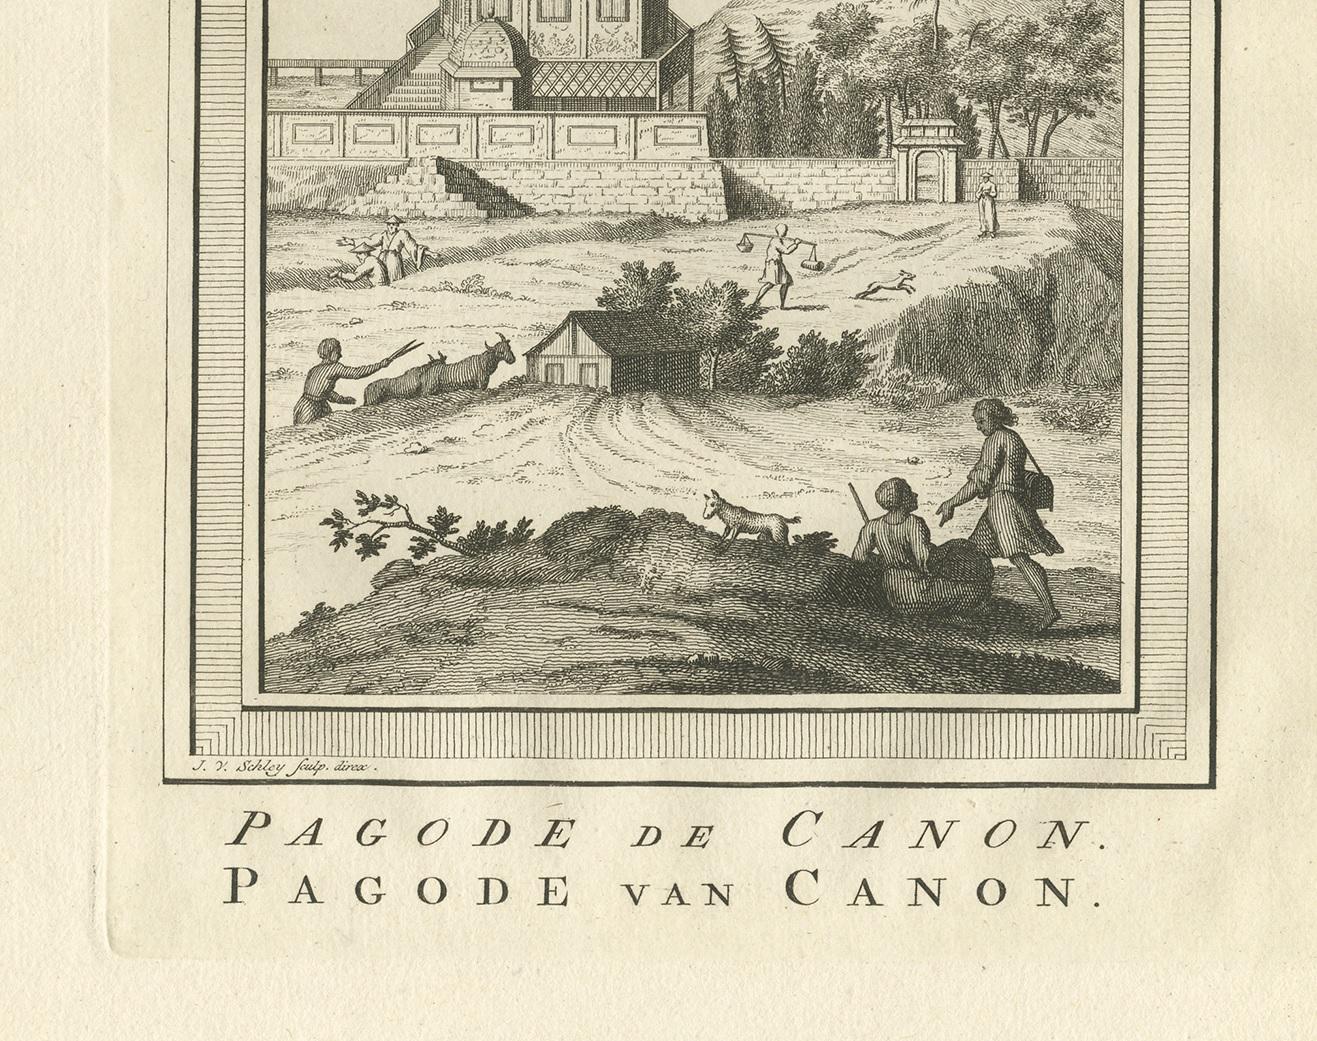 Gravure ancienne intitulée 'Pagode de Canon - Pagode van Canon'. Ancienne gravure représentant la pagode de Canon, au Japon. Cette gravure provient de l'Histoire générale des Voyages de A. Prévost.